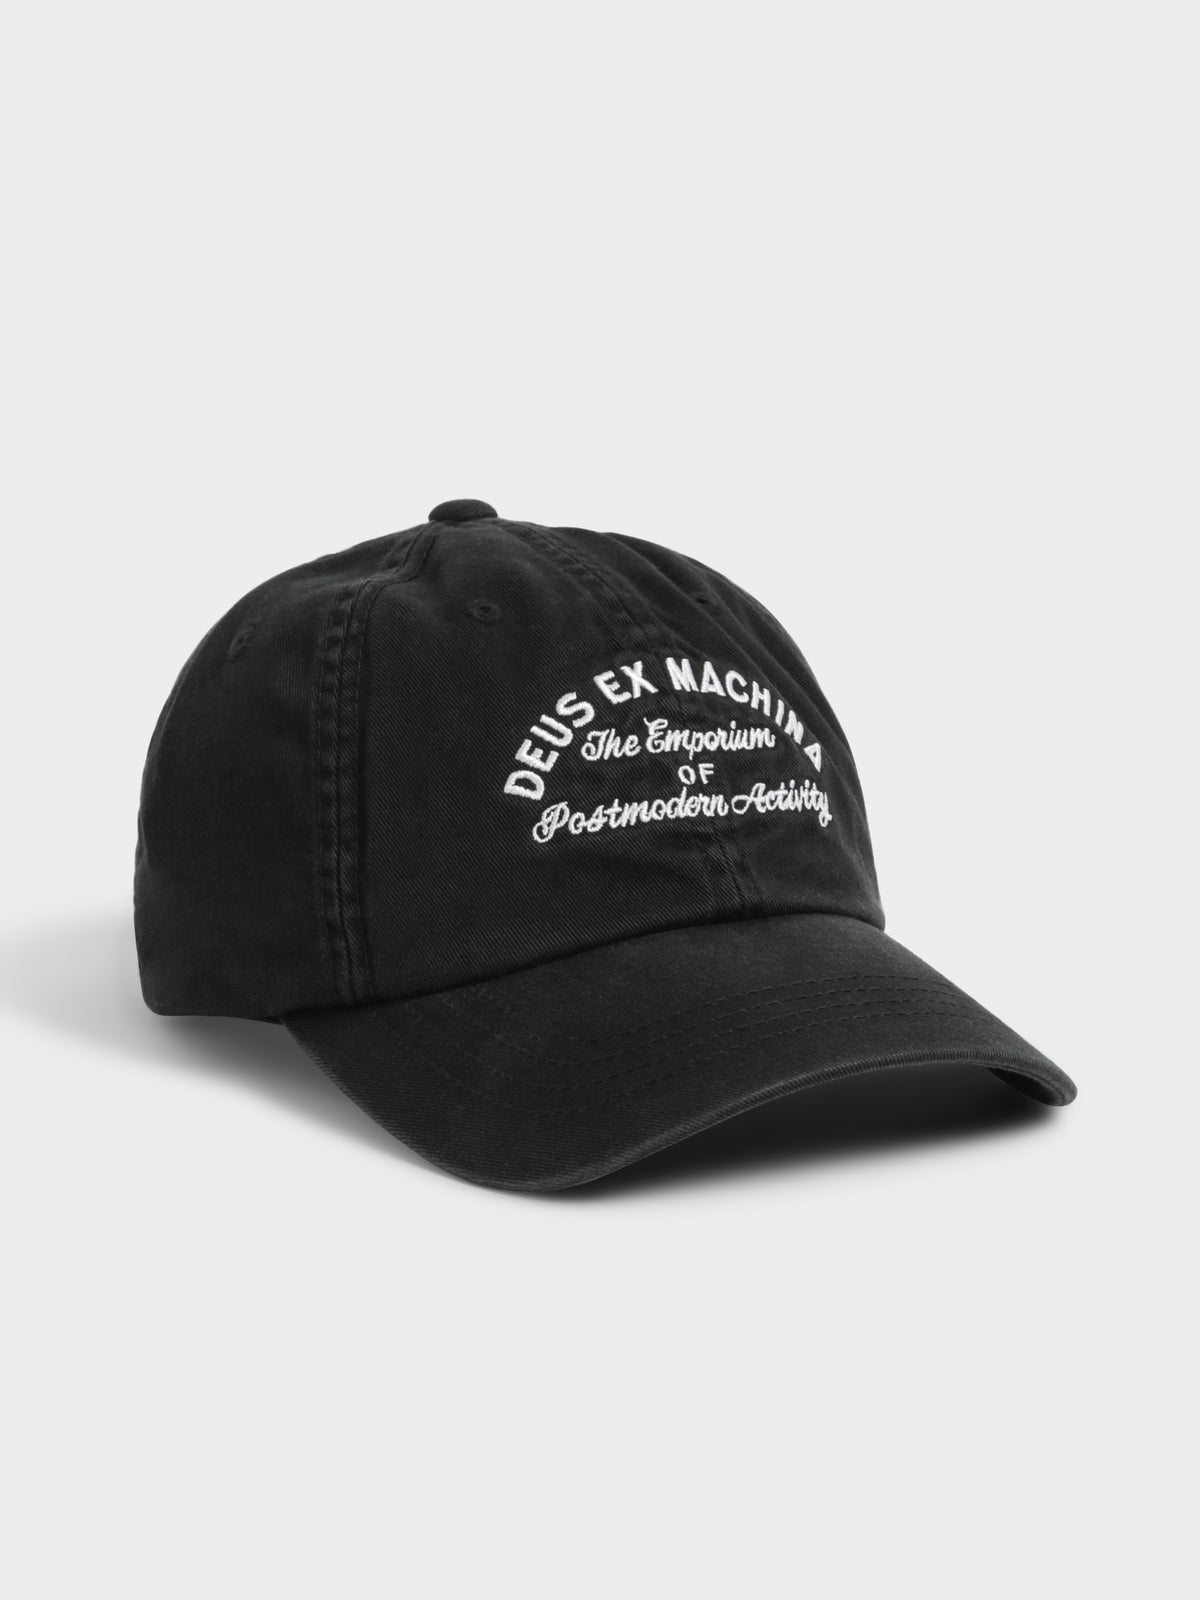 Classic Dad Emporium Cap in Black